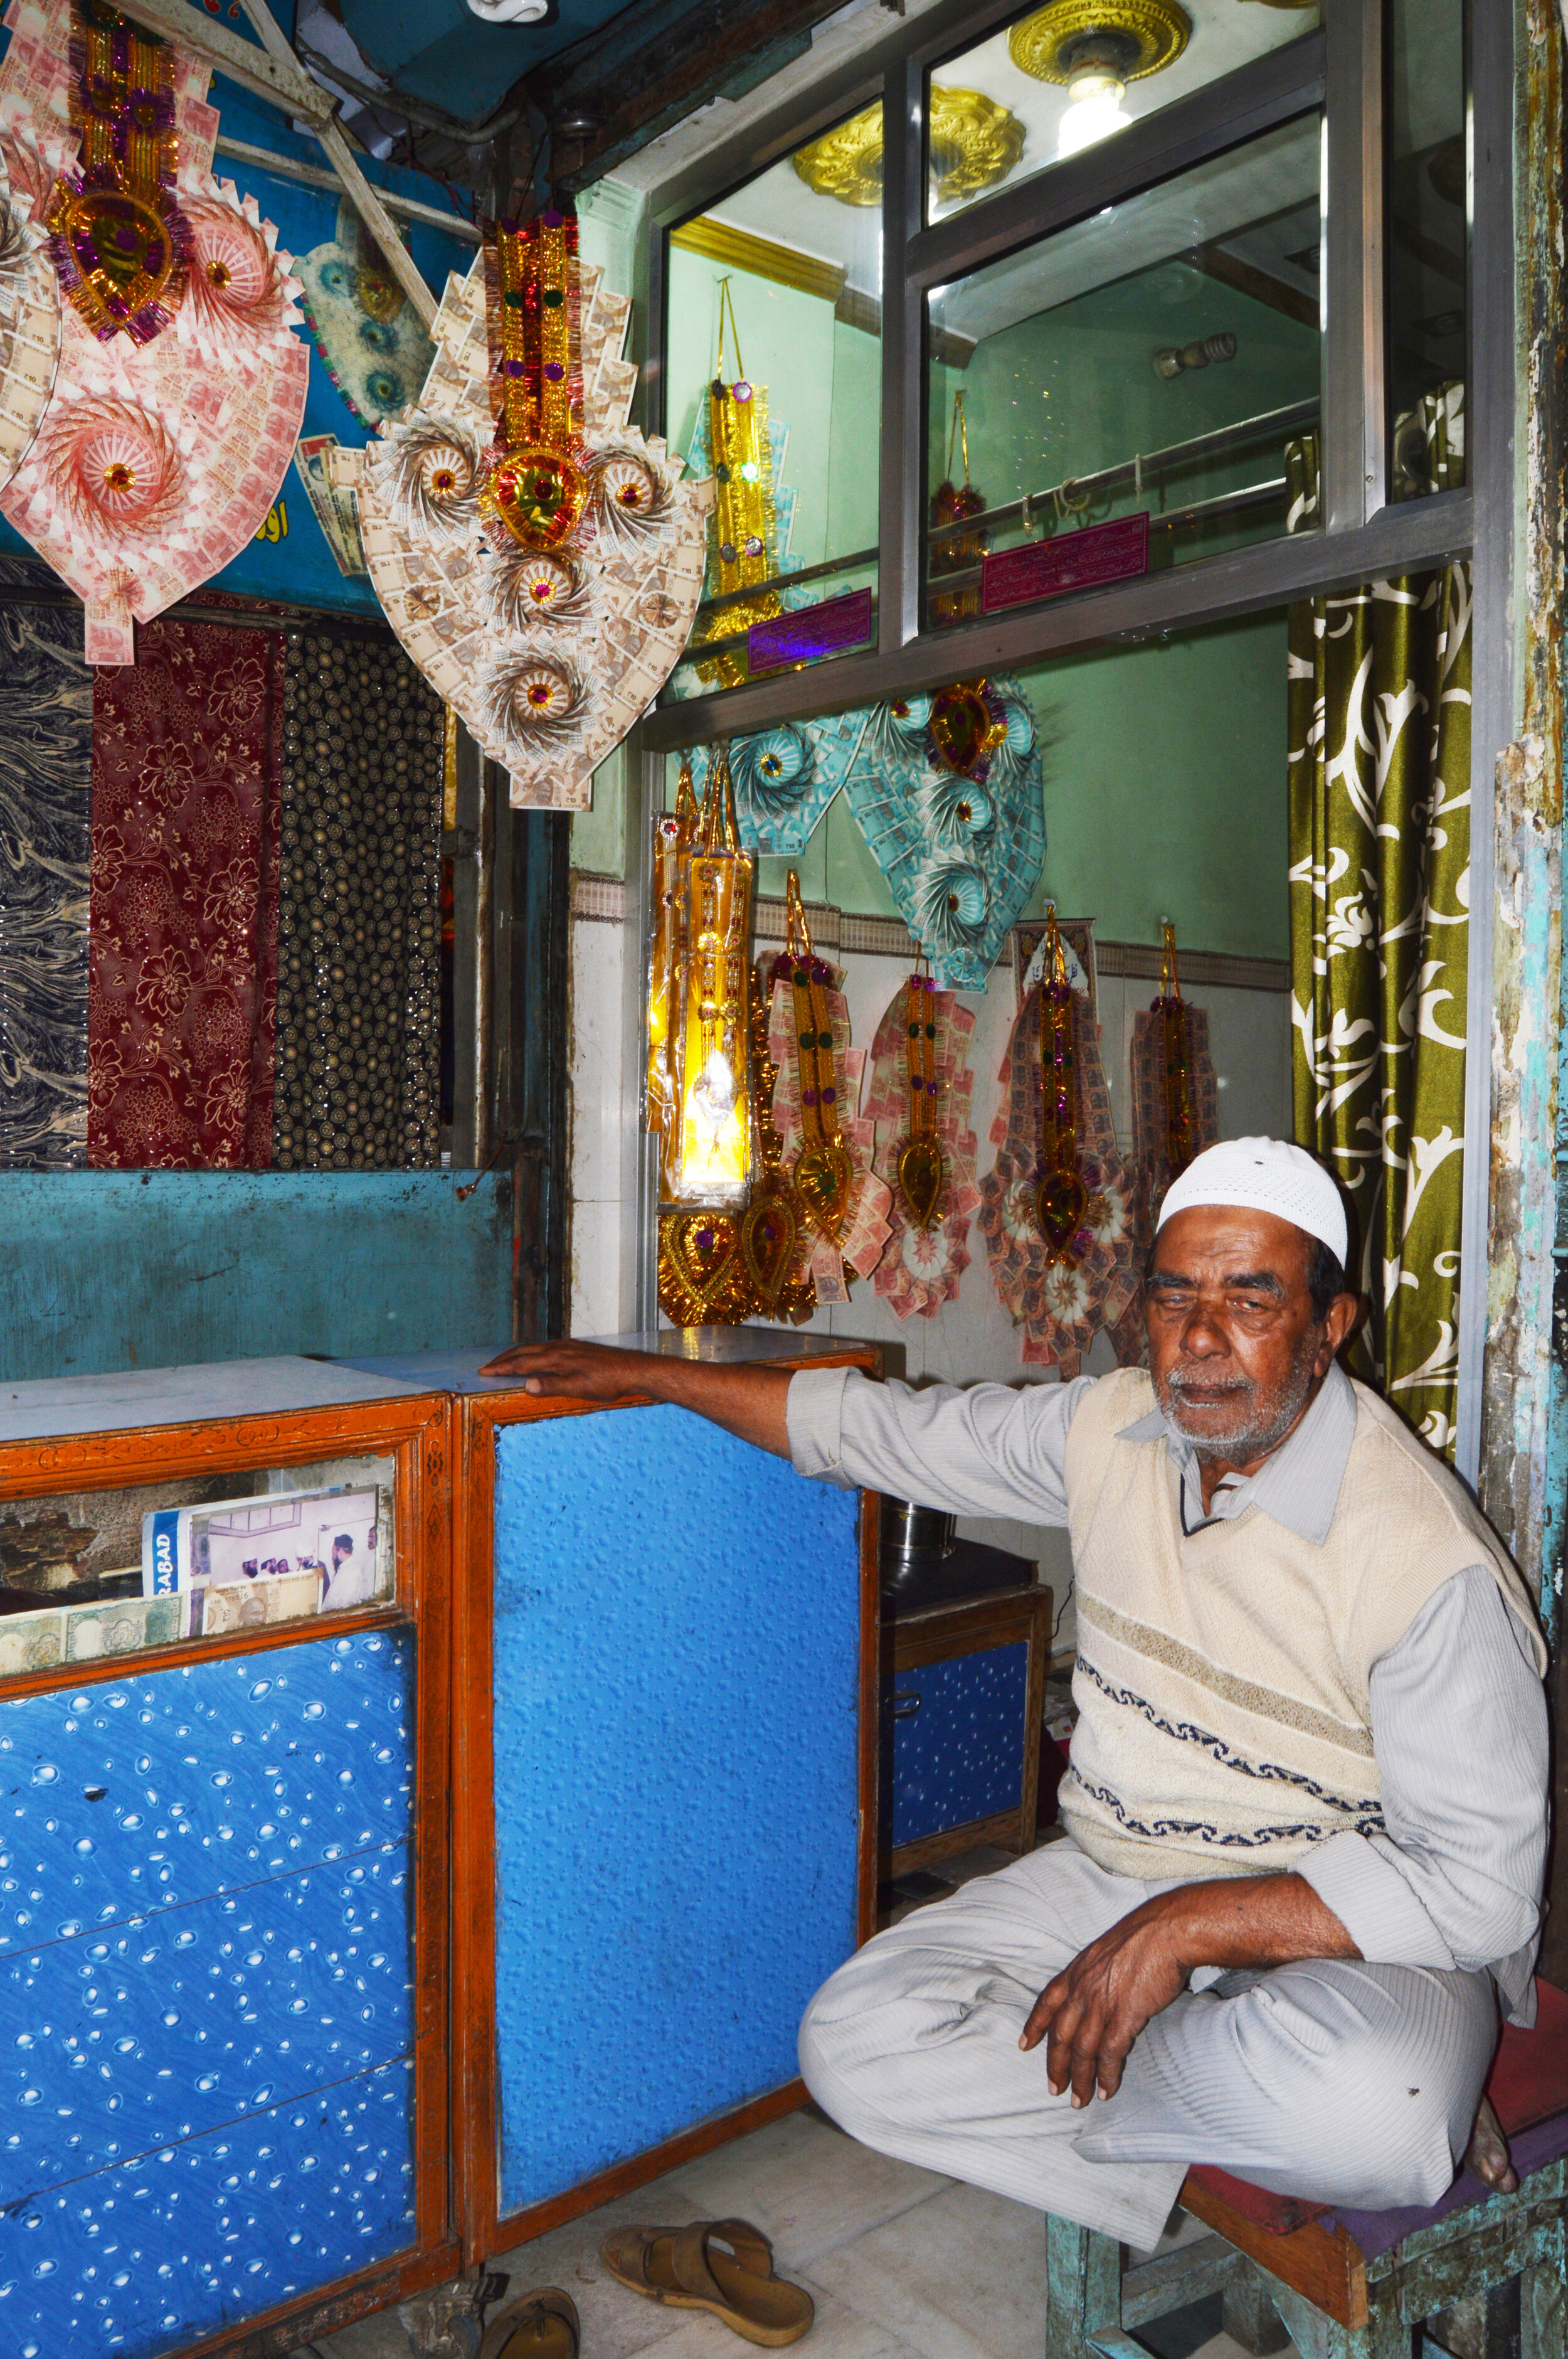  Decorative paper gizmo shop in Old Delhi.  